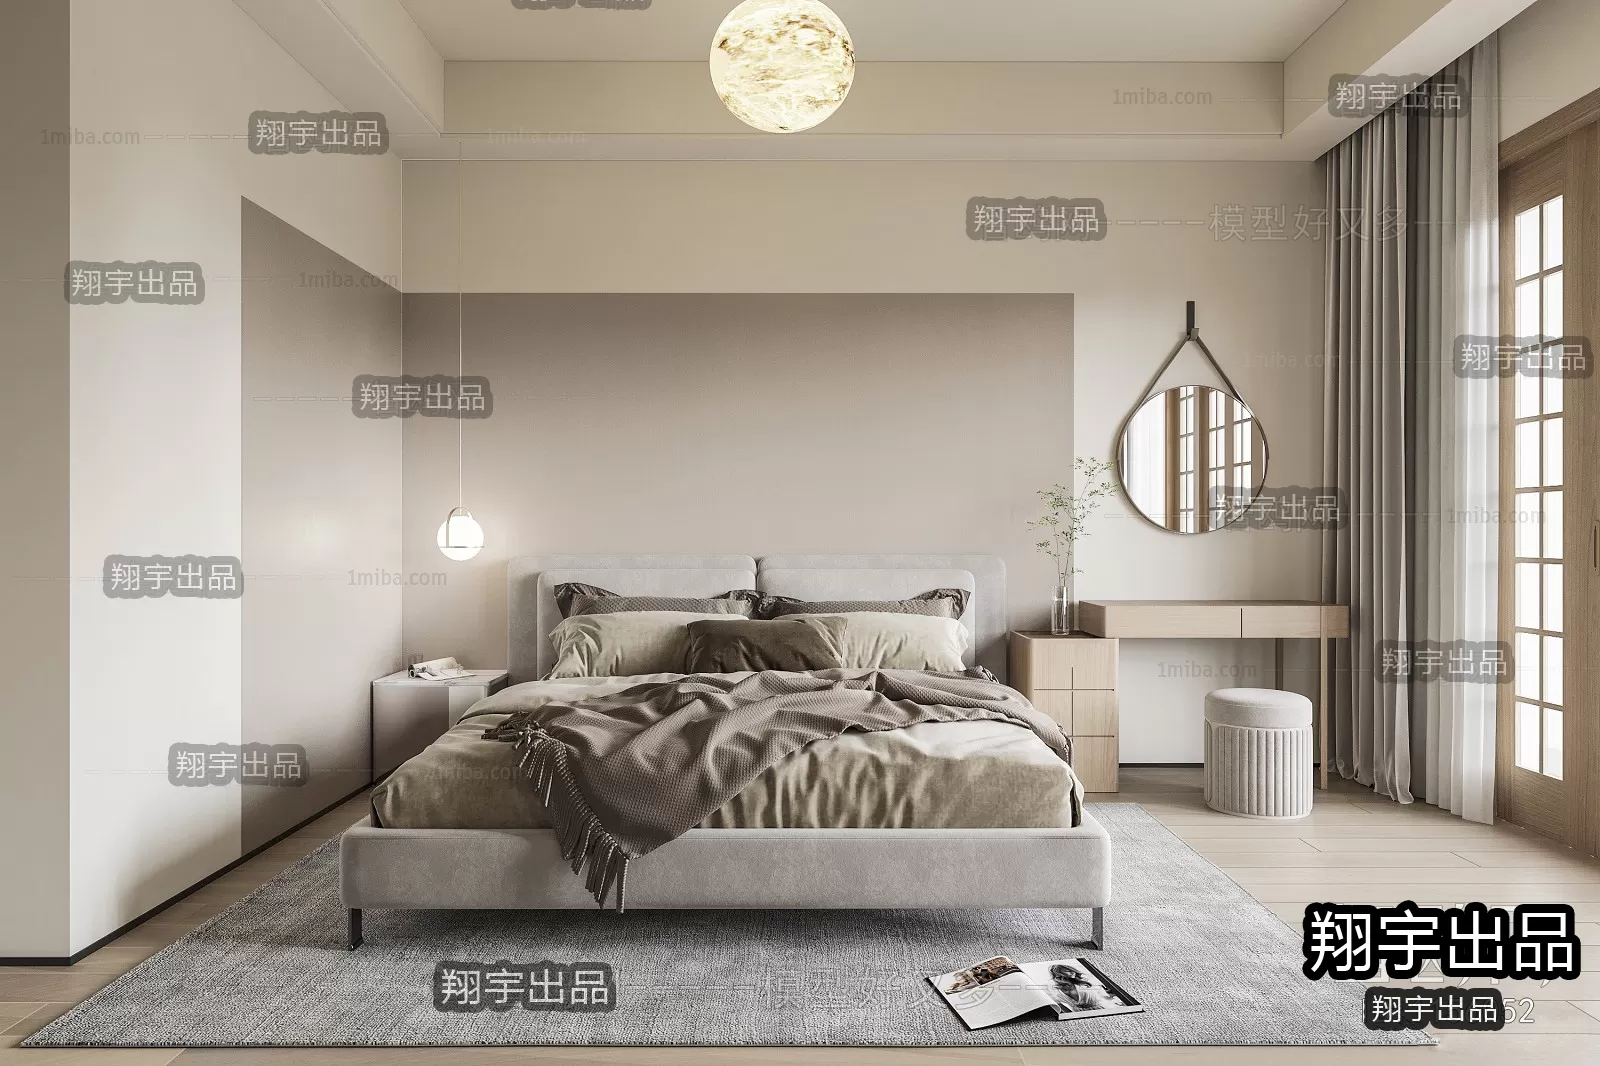 Bedroom – Scandinavian architecture – 012